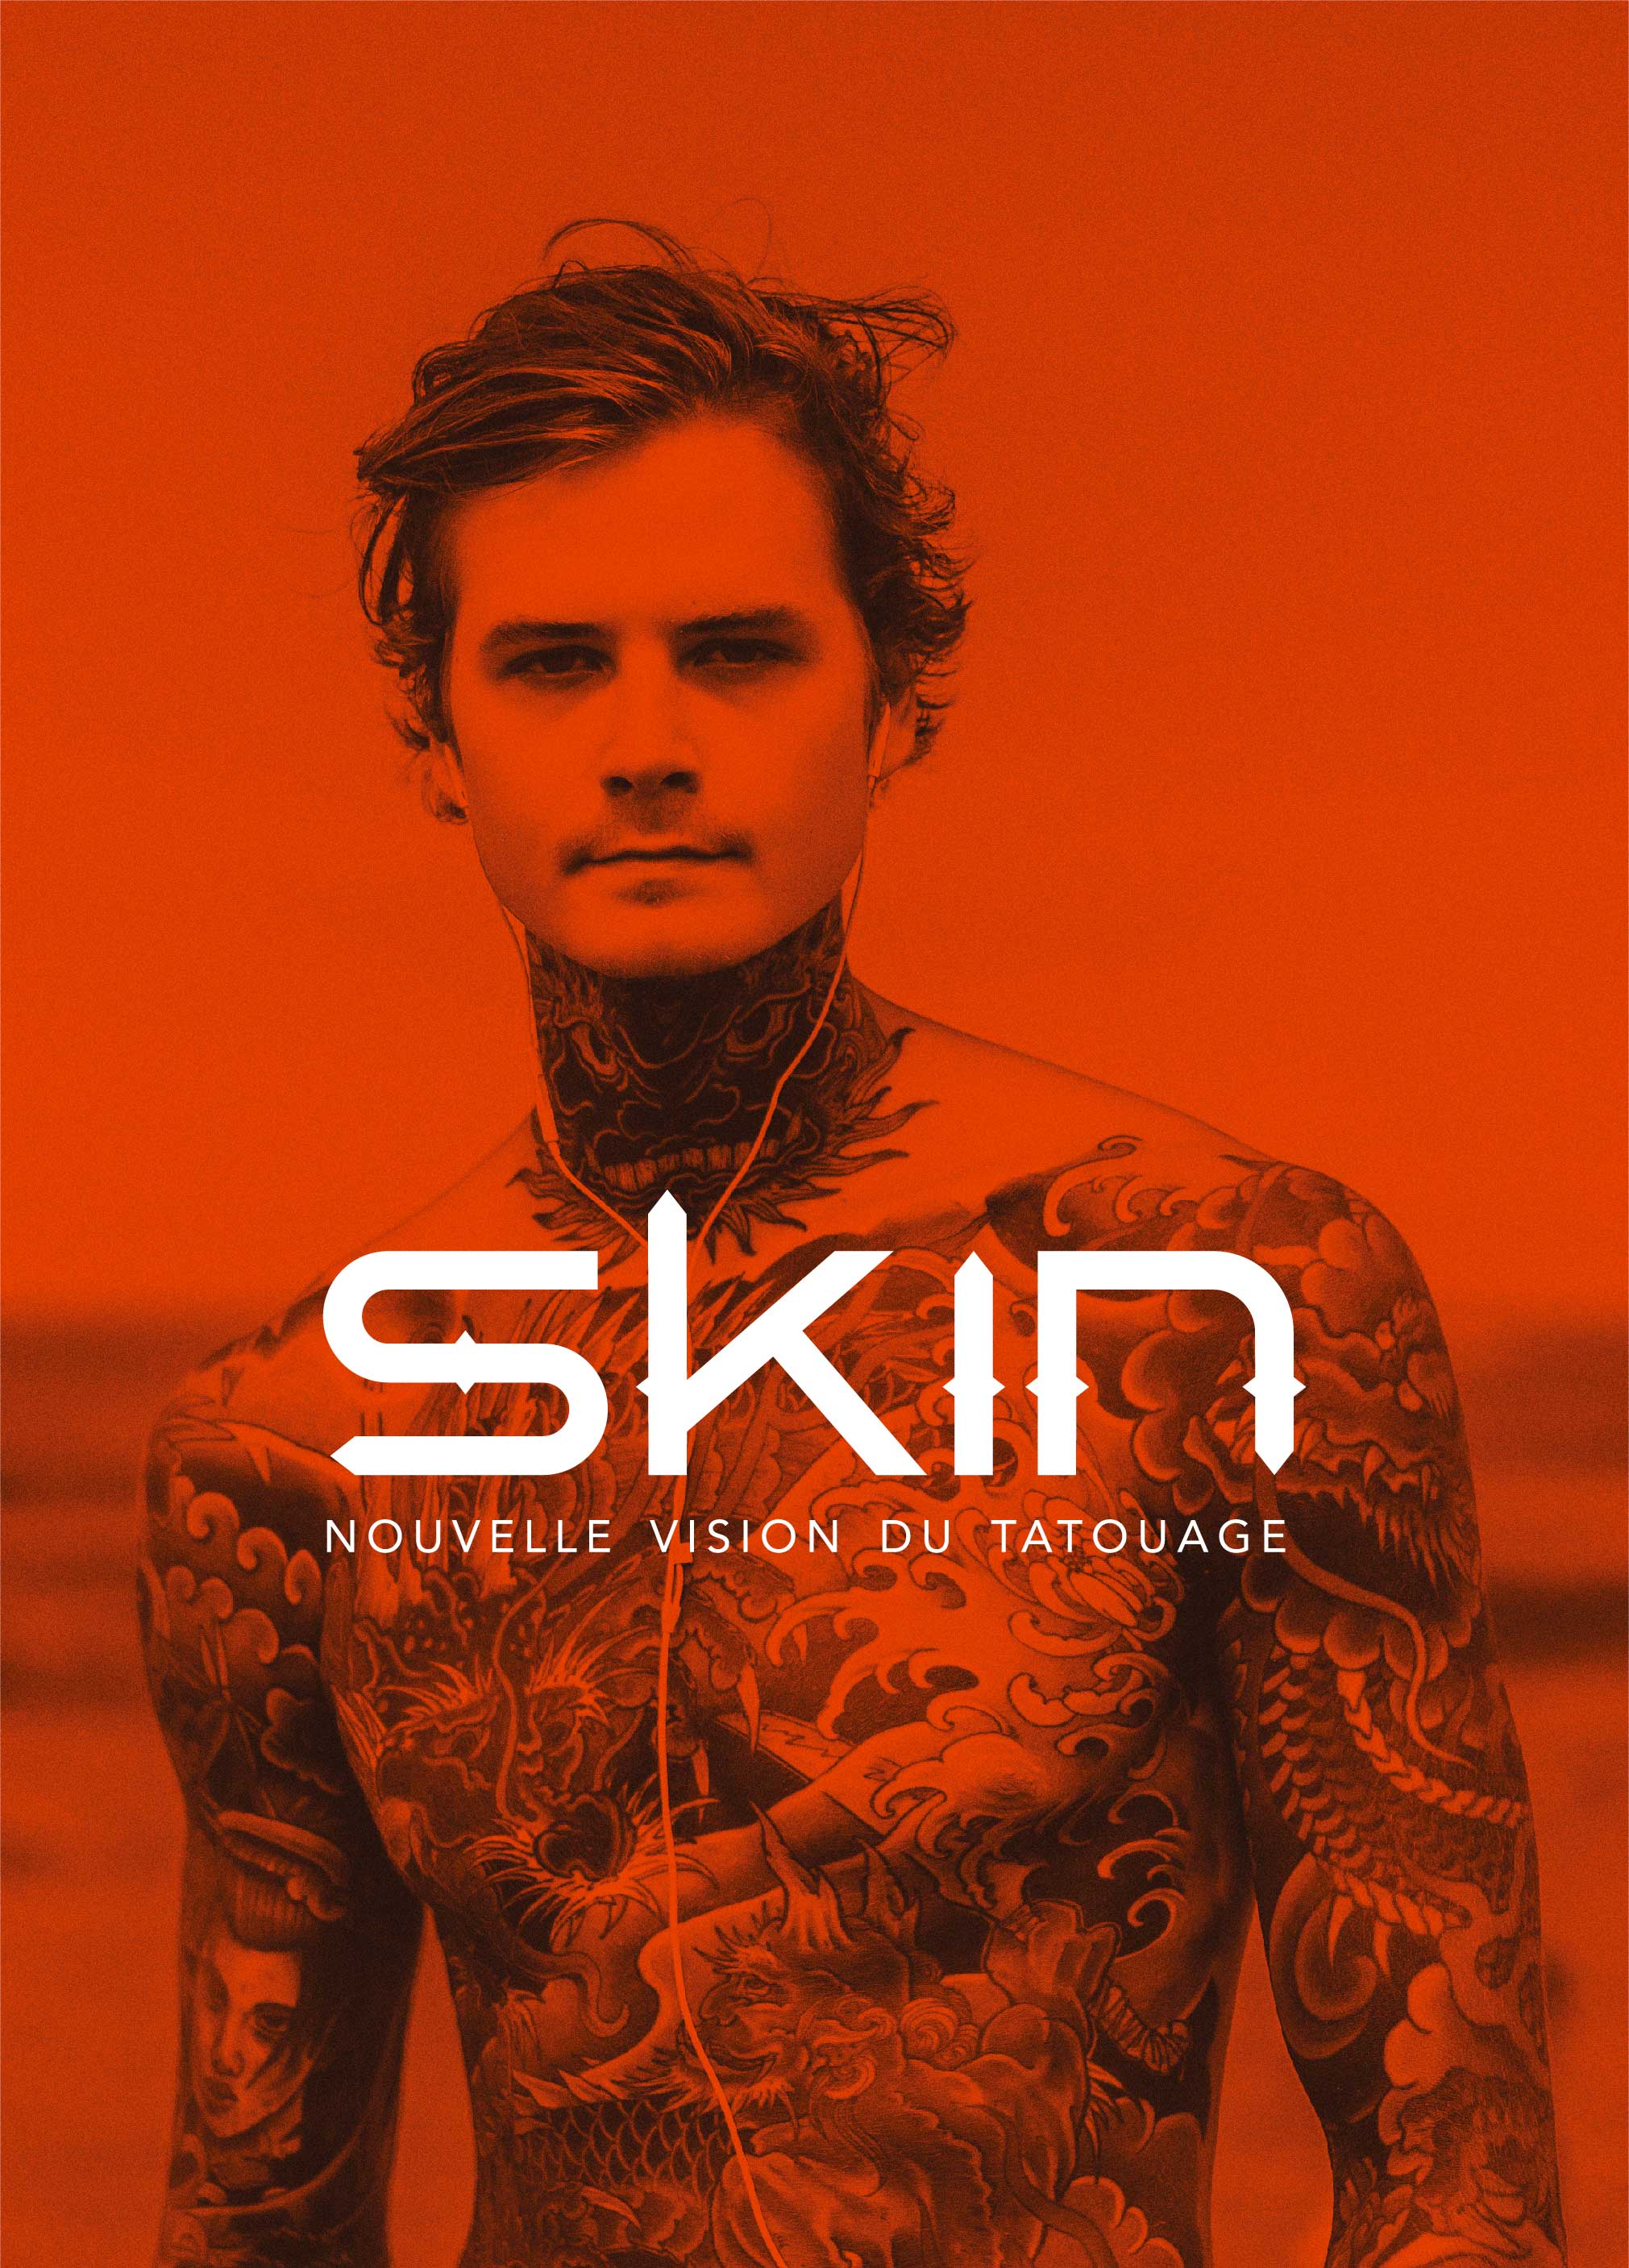 Visuel de couverture projet Skin